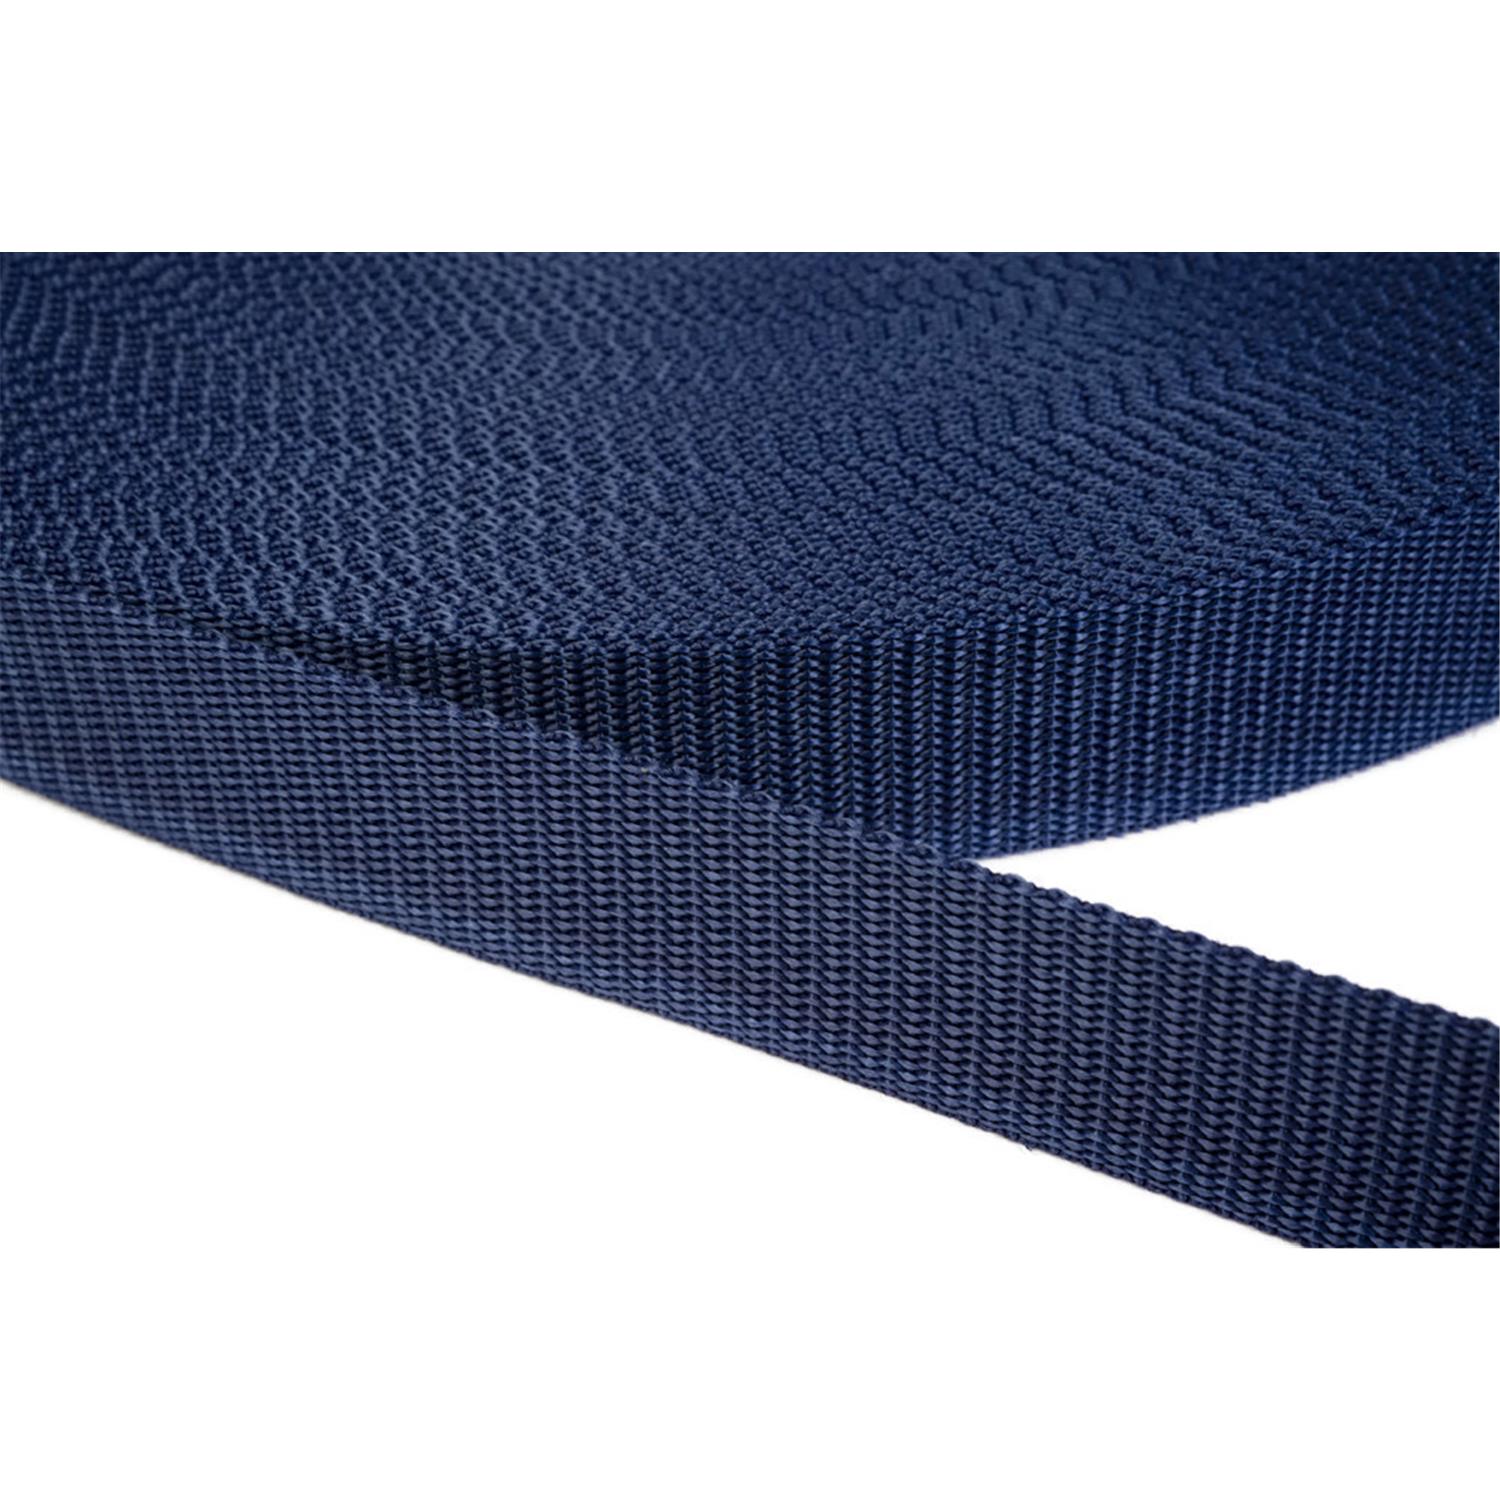 Gurtband 25mm breit aus Polypropylen in 41 Farben 27 - dunkelblau 12 Meter